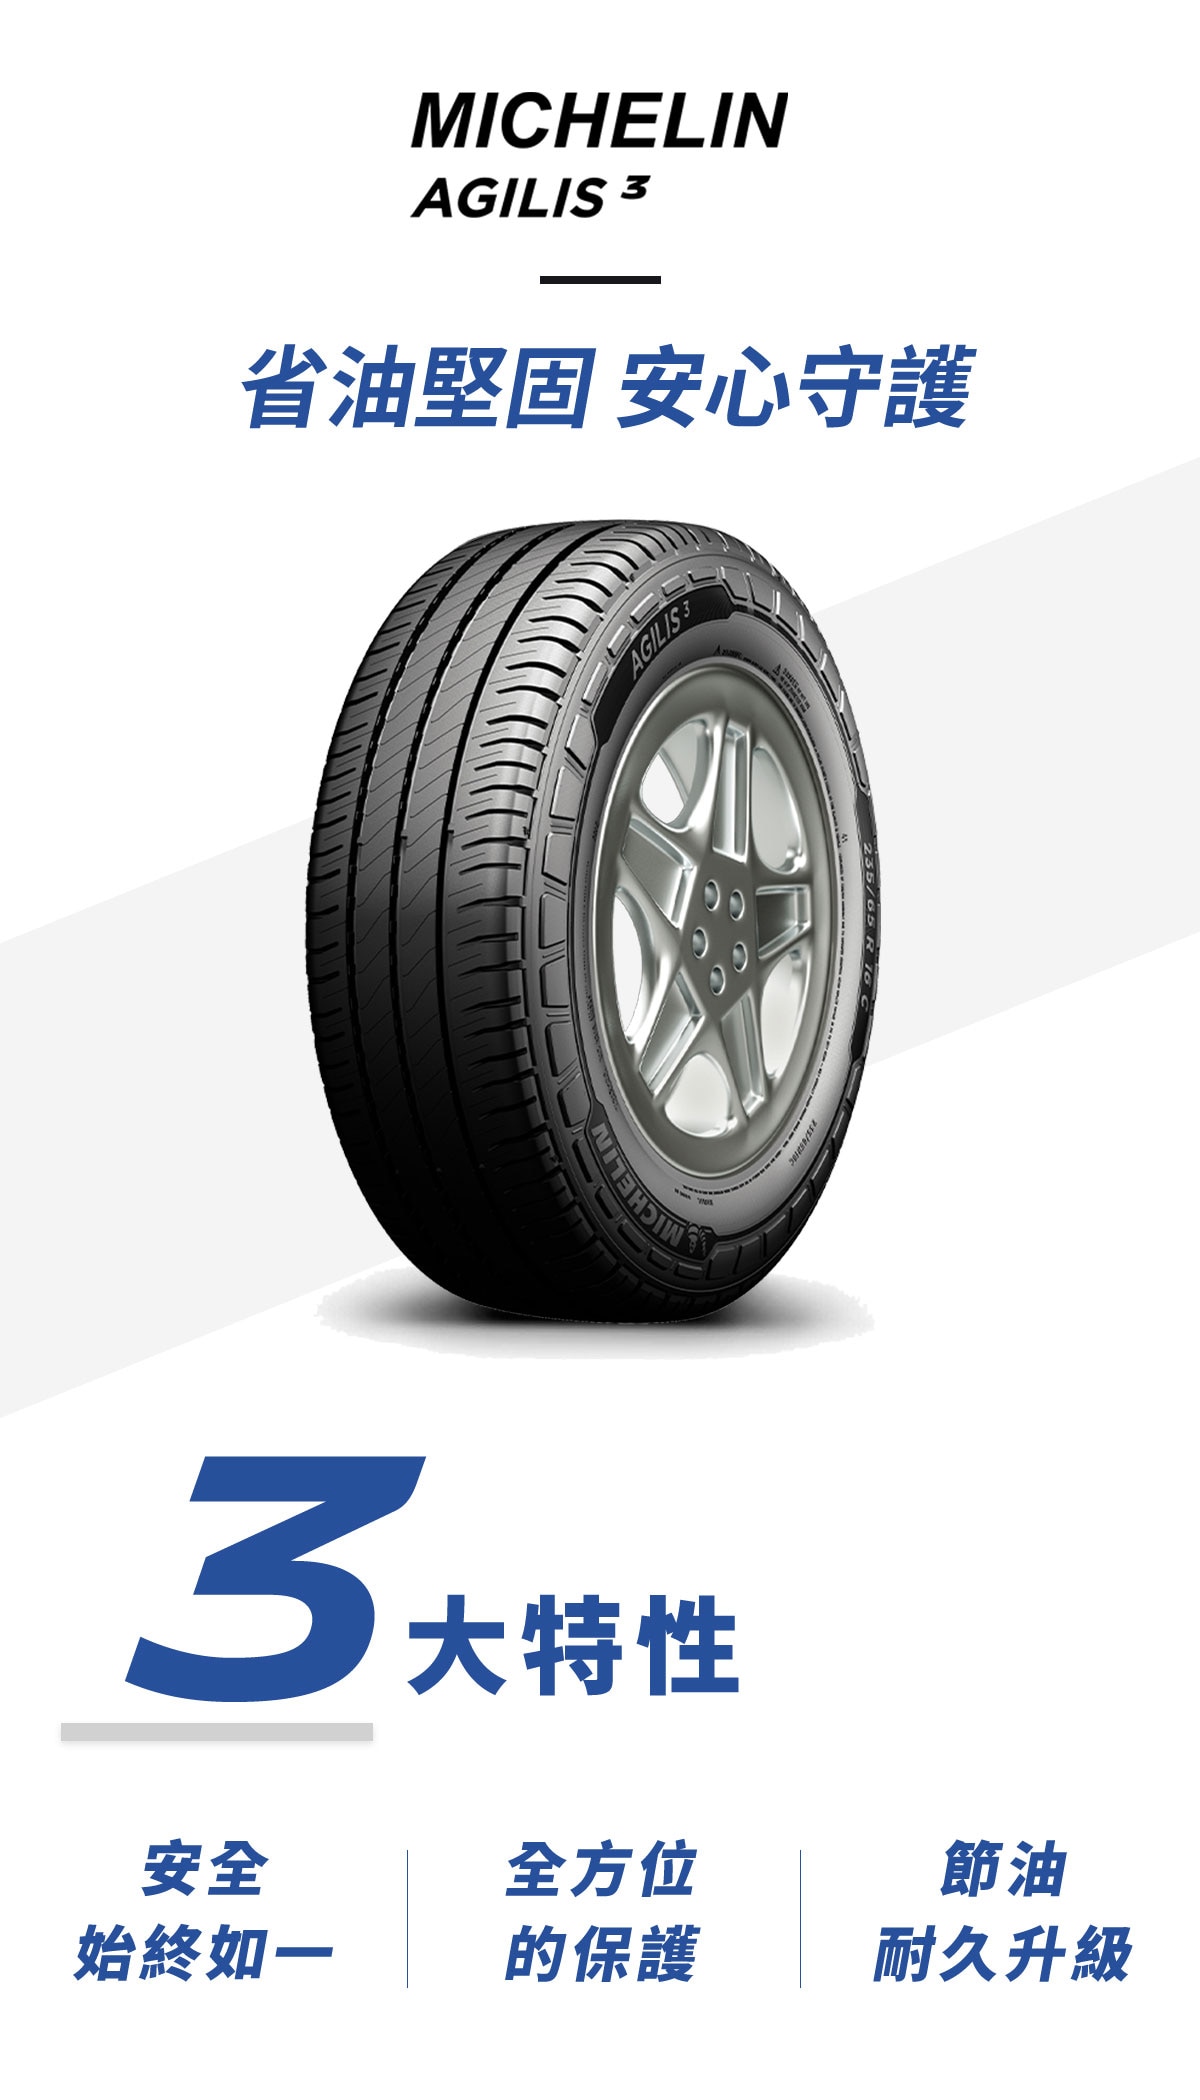 Michlin米其林輪胎AGILIS 3 省油、安全又耐用，長效抓地技術使輪胎在溼地抓地力性能大幅提升，米其林卡客車輪胎的專利技術，能有效防止輪胎因夾石所帶來的損傷。Agilis 3無論商務的耐用穩定需求，或是家庭用車講究的舒適與安全，都是廂型車最合適的胎款選擇。